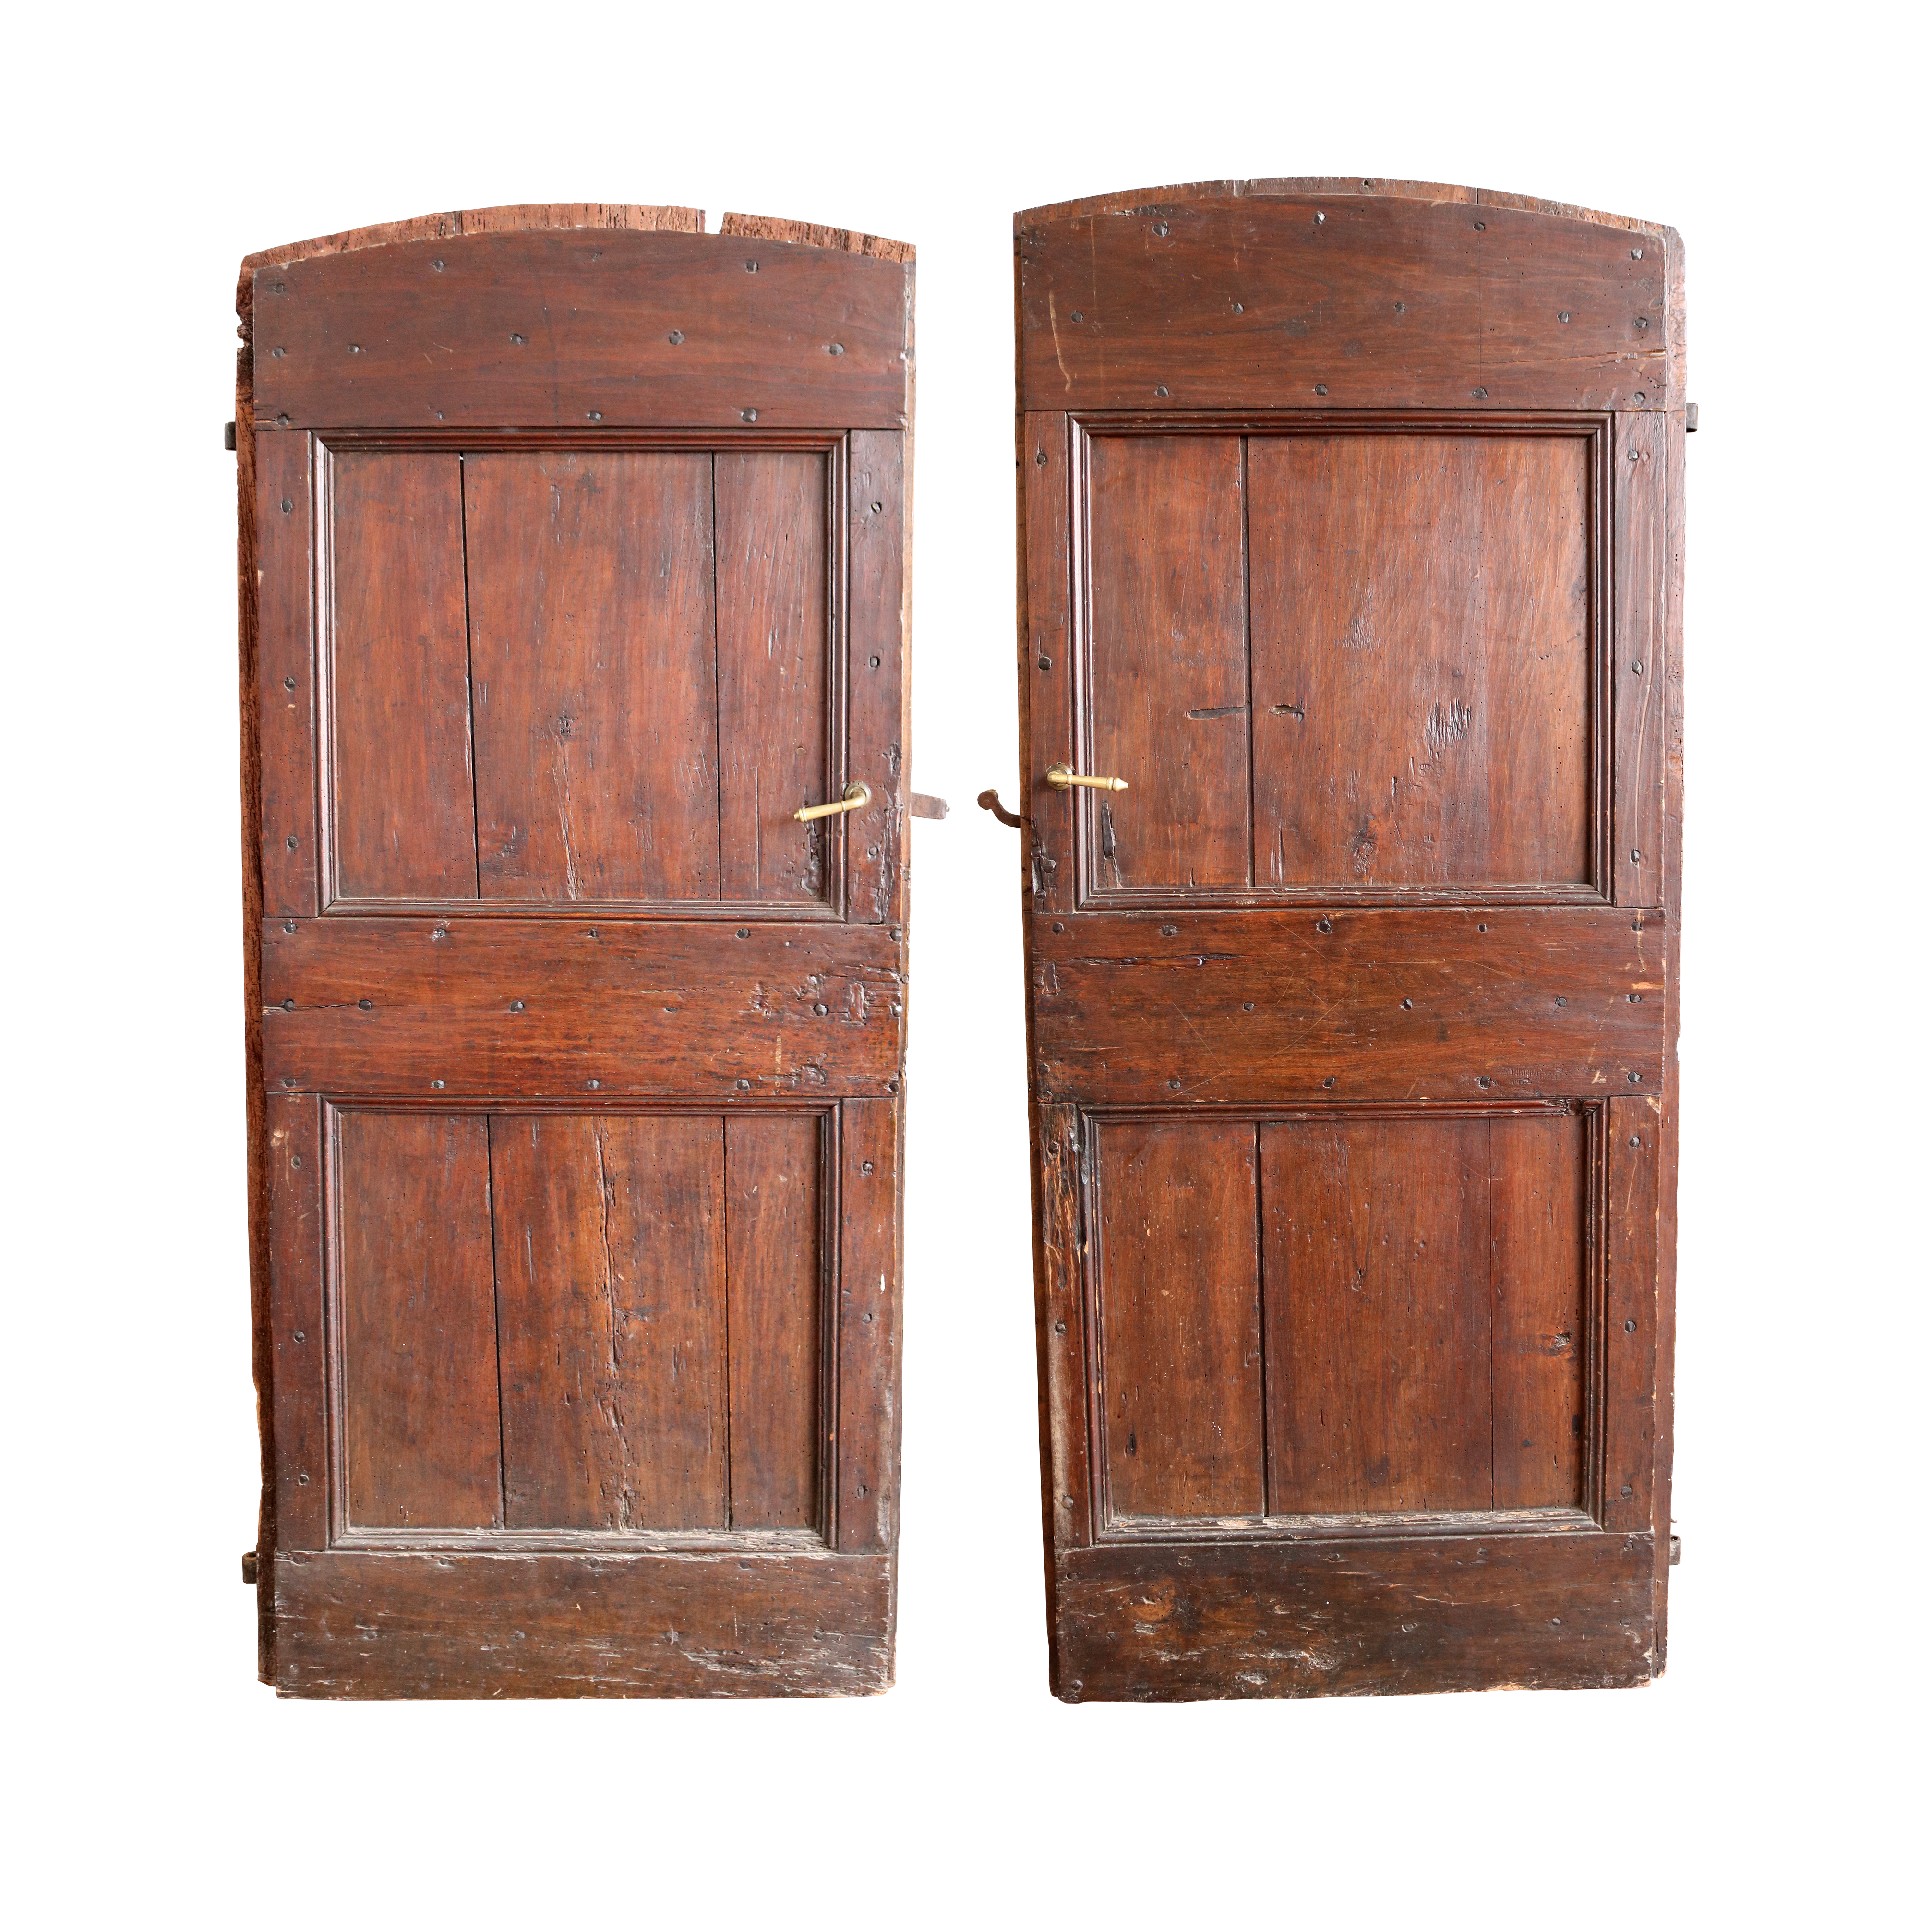 Antica coppia di porte in legno. - Porte Rare - Porte Antiche - Prodotti - Antichità Fiorillo